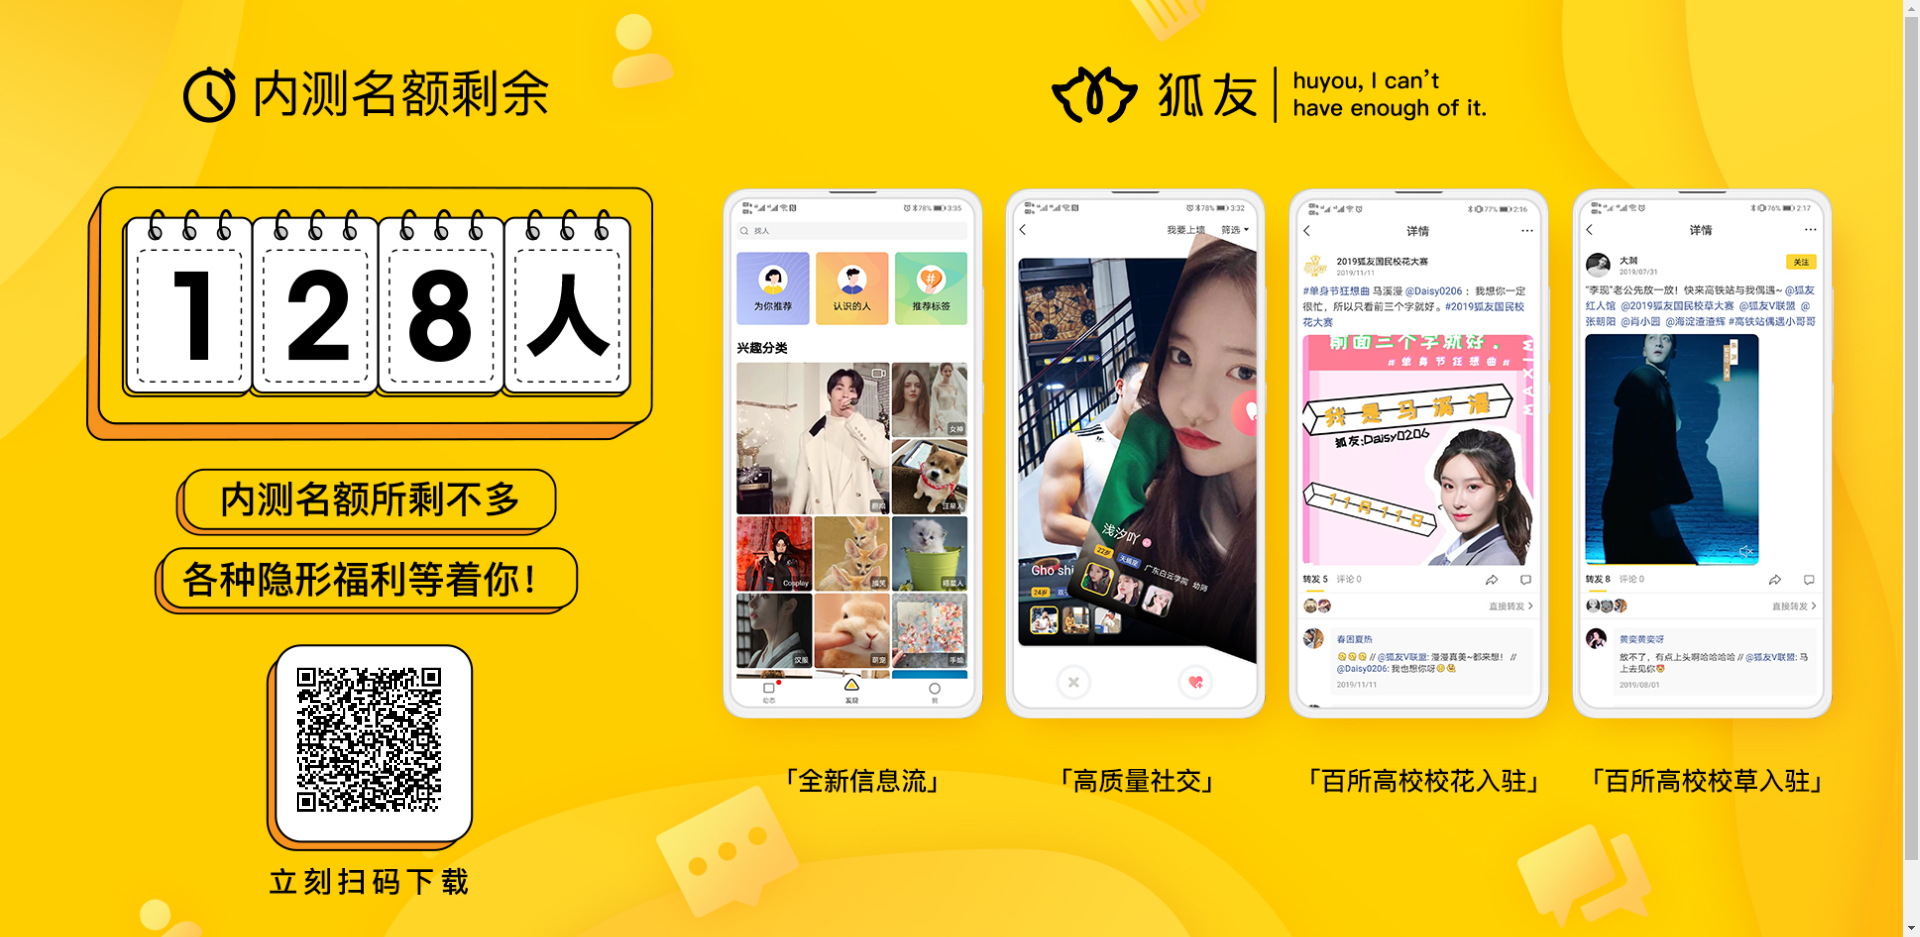 搜狐旗下重磅推出的全新社交app